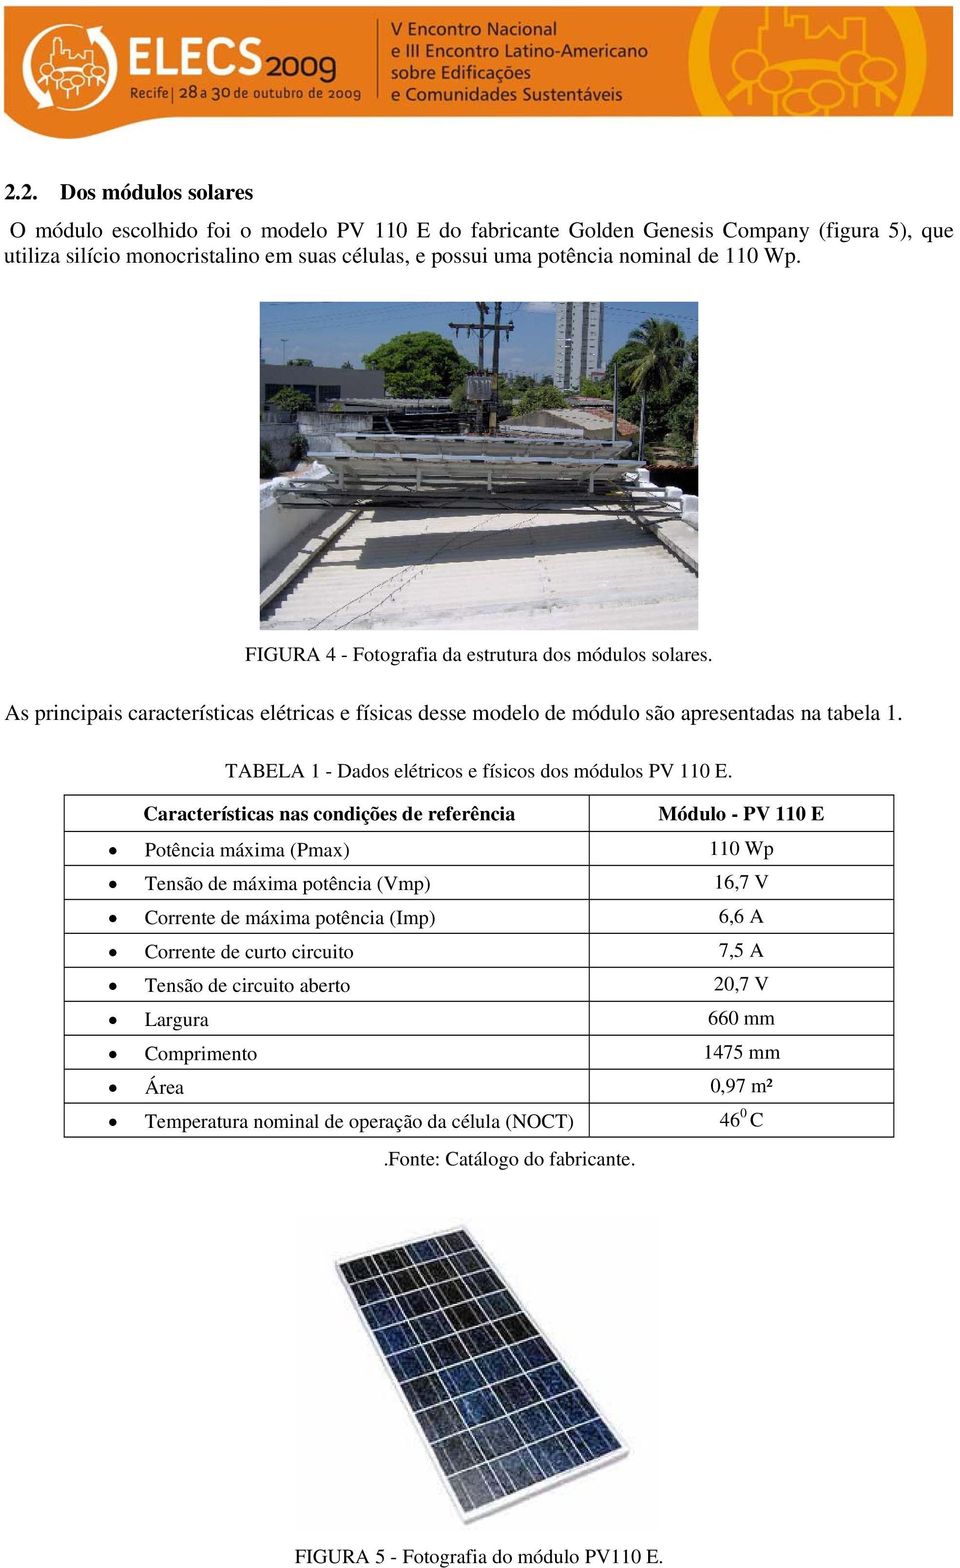 TABELA 1 - Dados elétricos e físicos dos módulos PV 110 E.